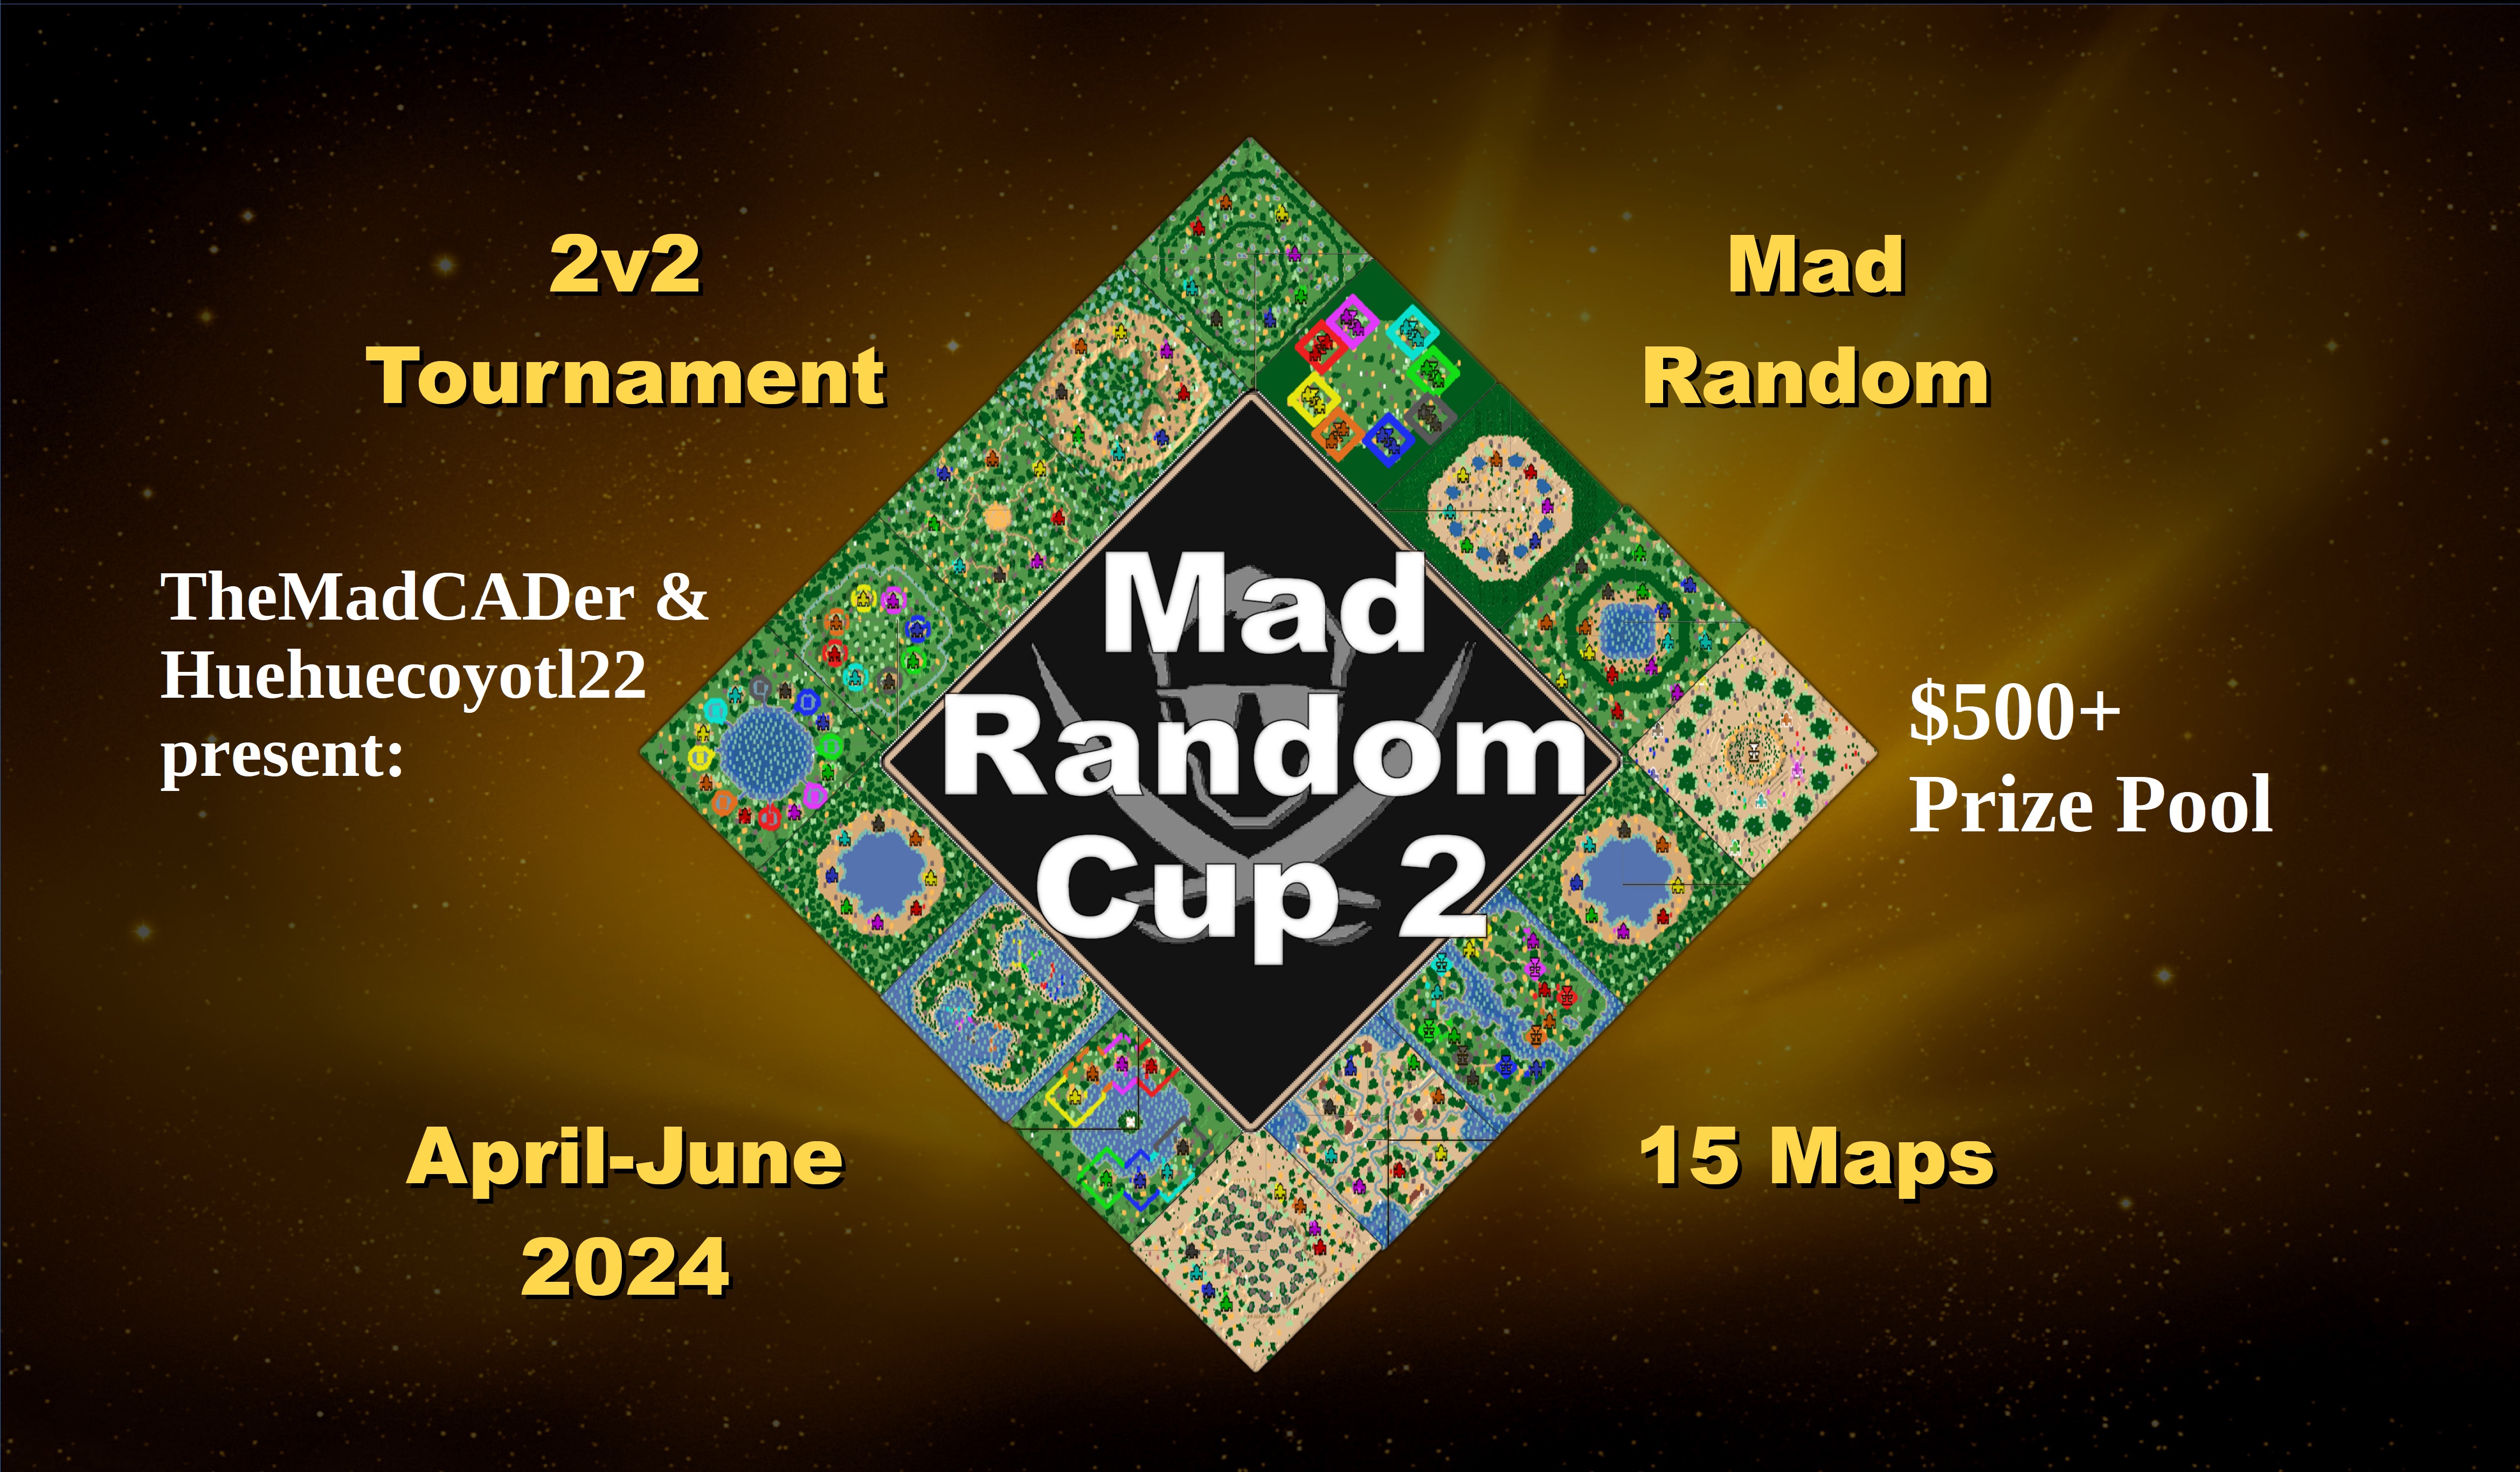 Mad_Random_Cup_2_Banner_v3.jpg